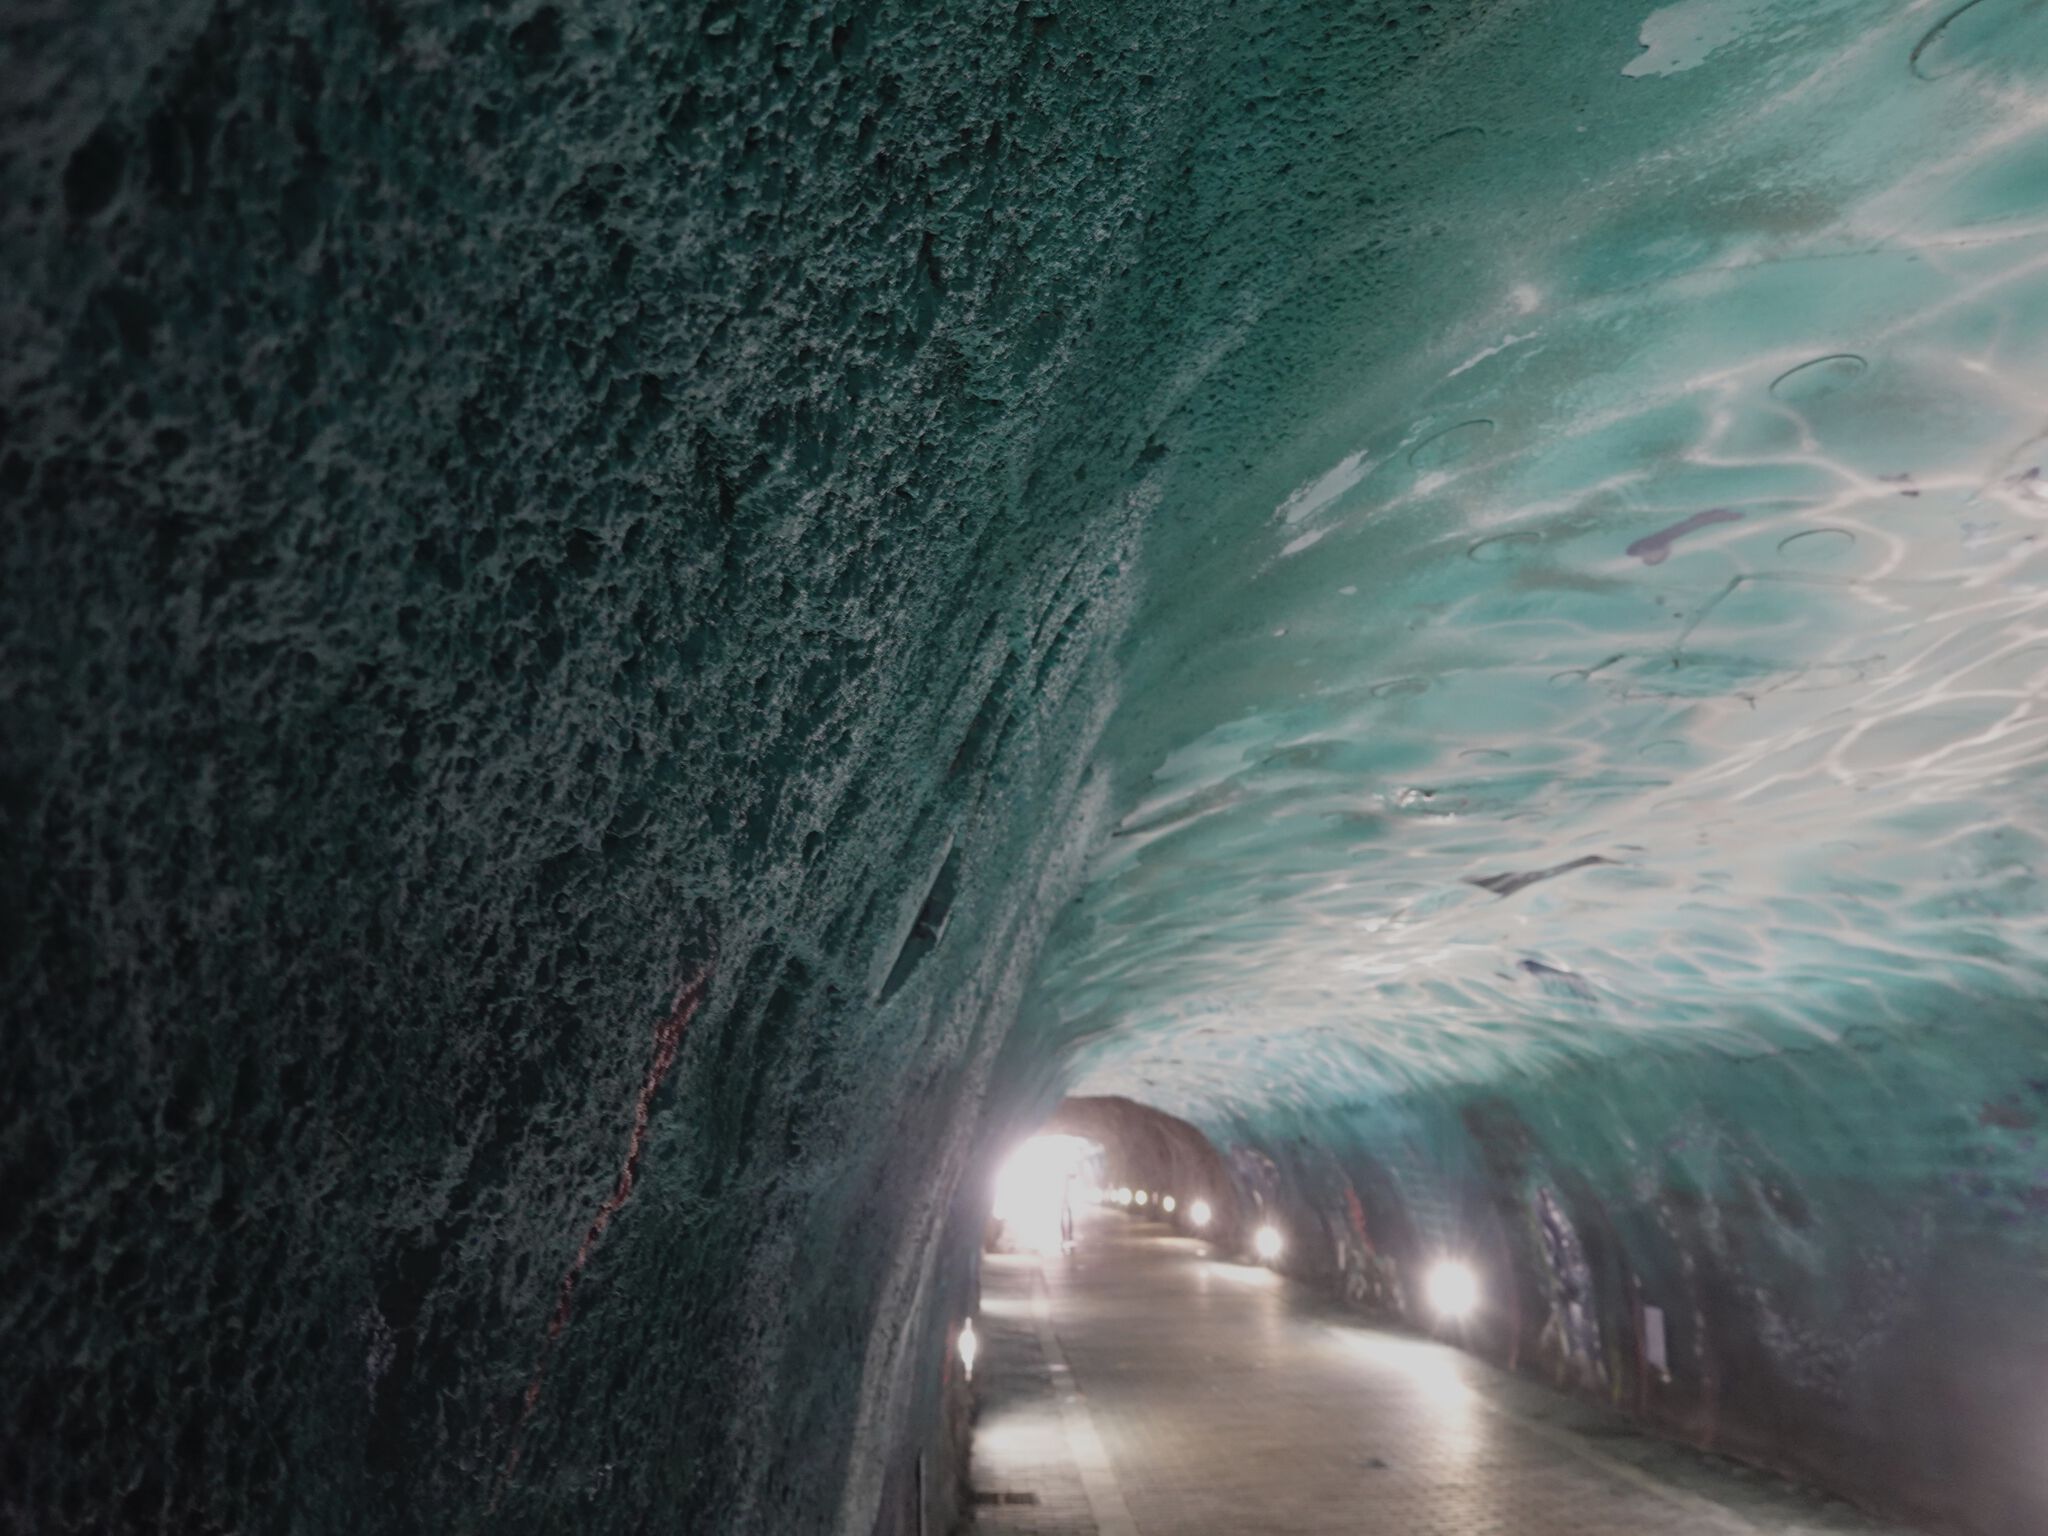 Steve Camino, mezclandocolores83&mdash;Atalaya Tunnel 